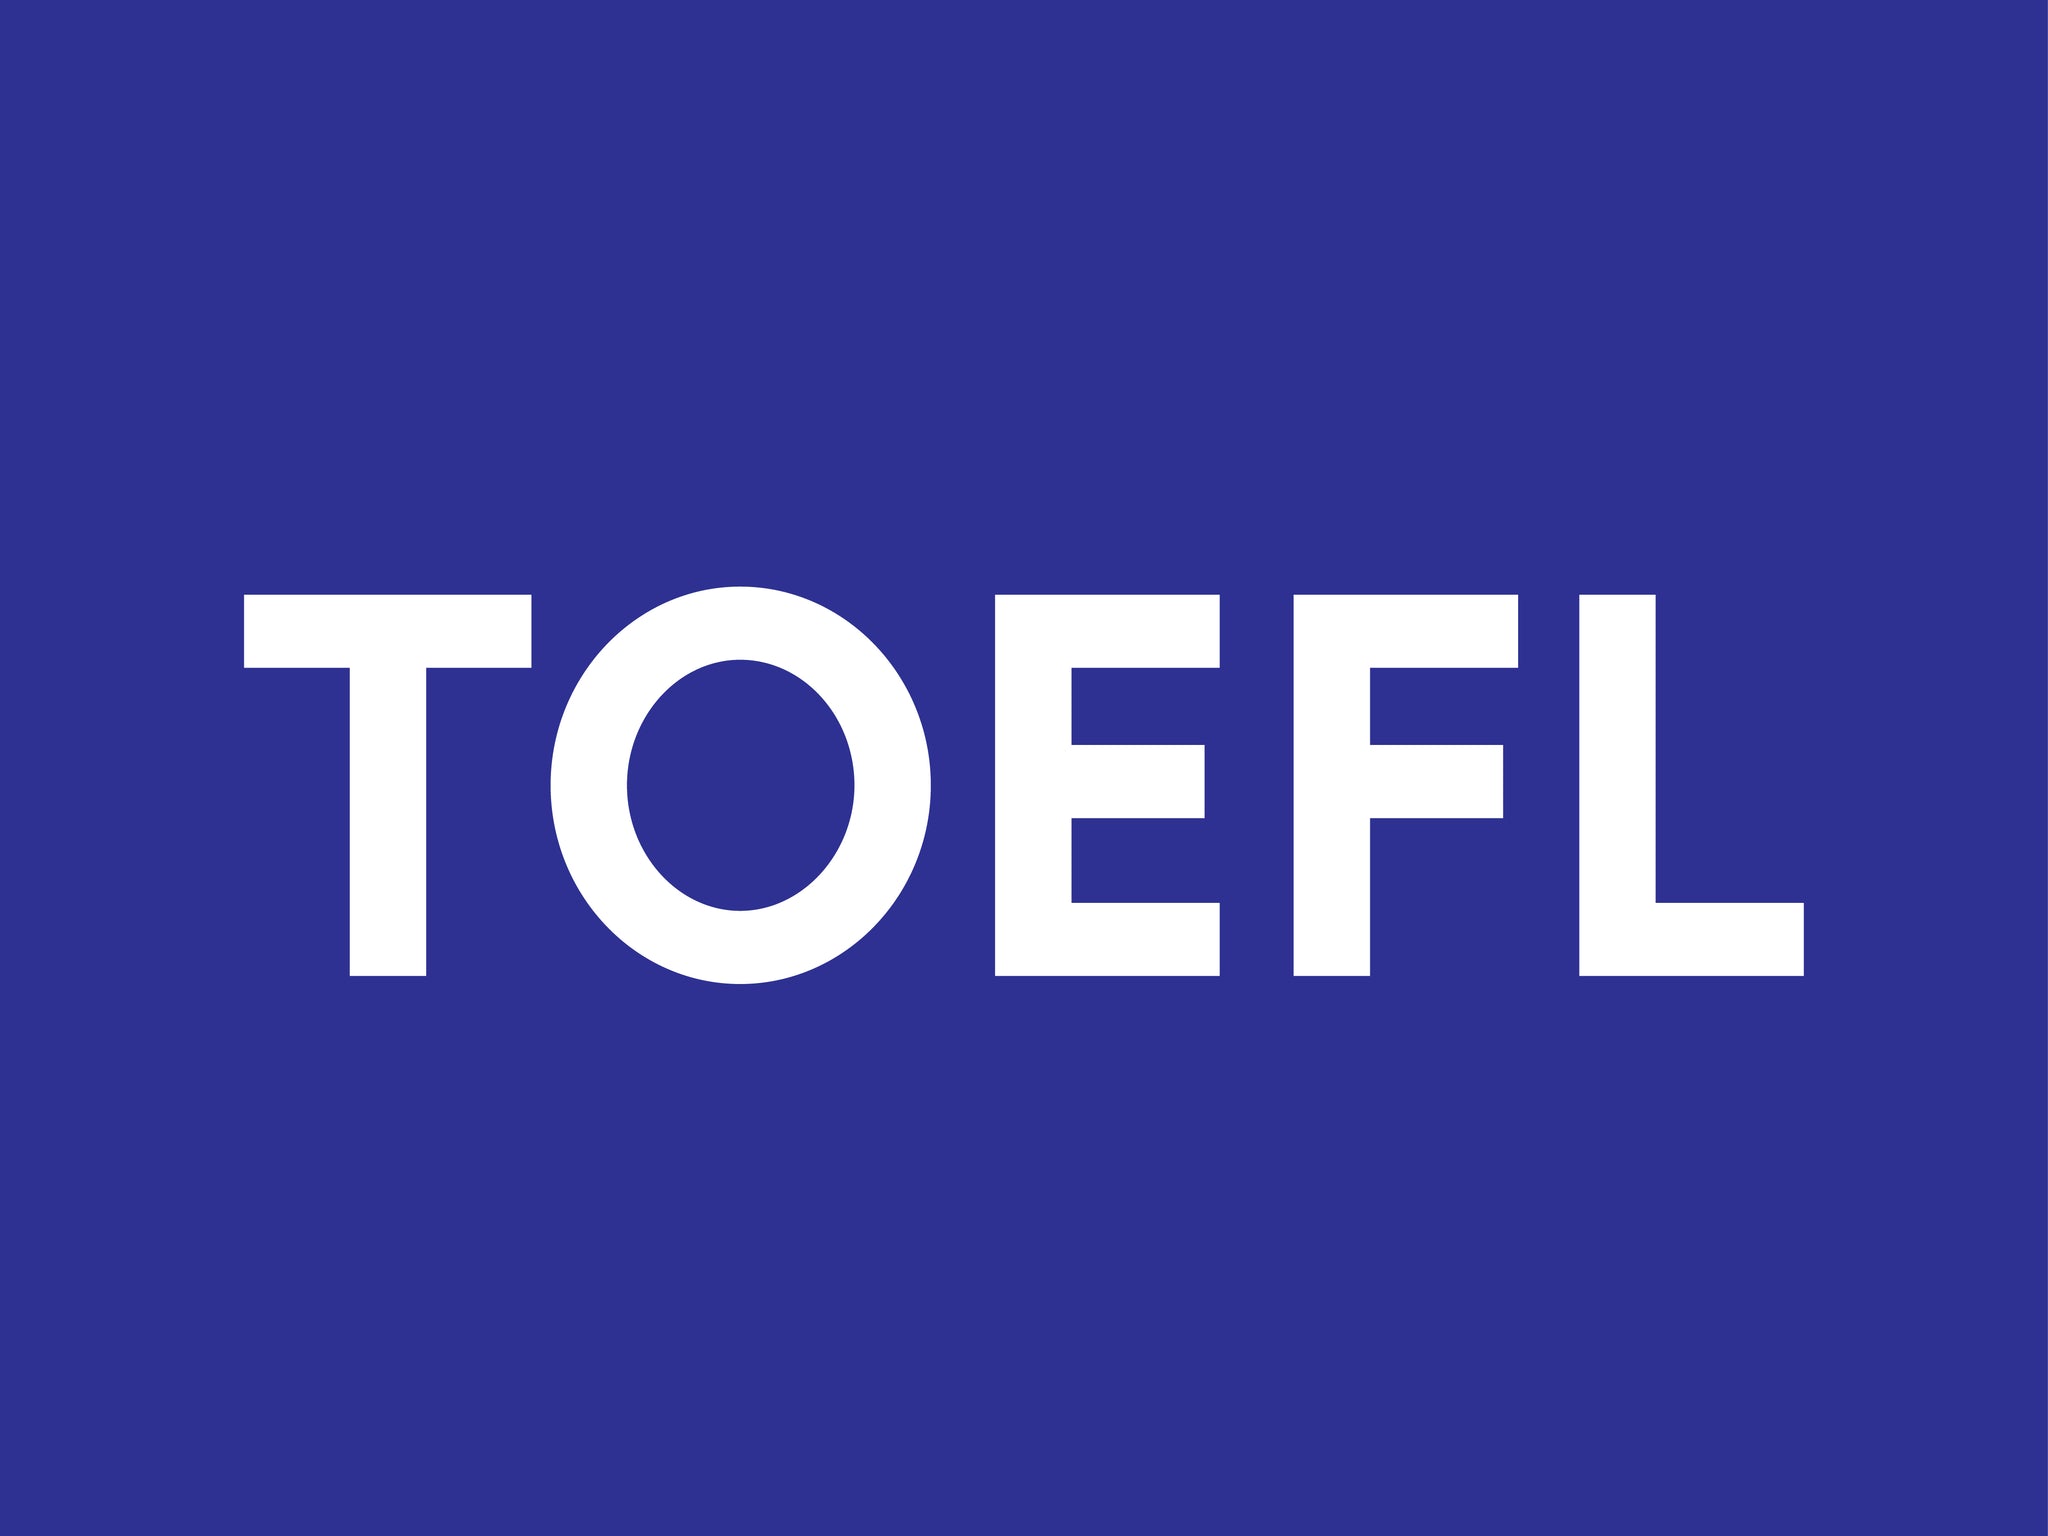 Toefl -دورة التحضير لامتحان التوفل اون لاين - elmadrasah.com